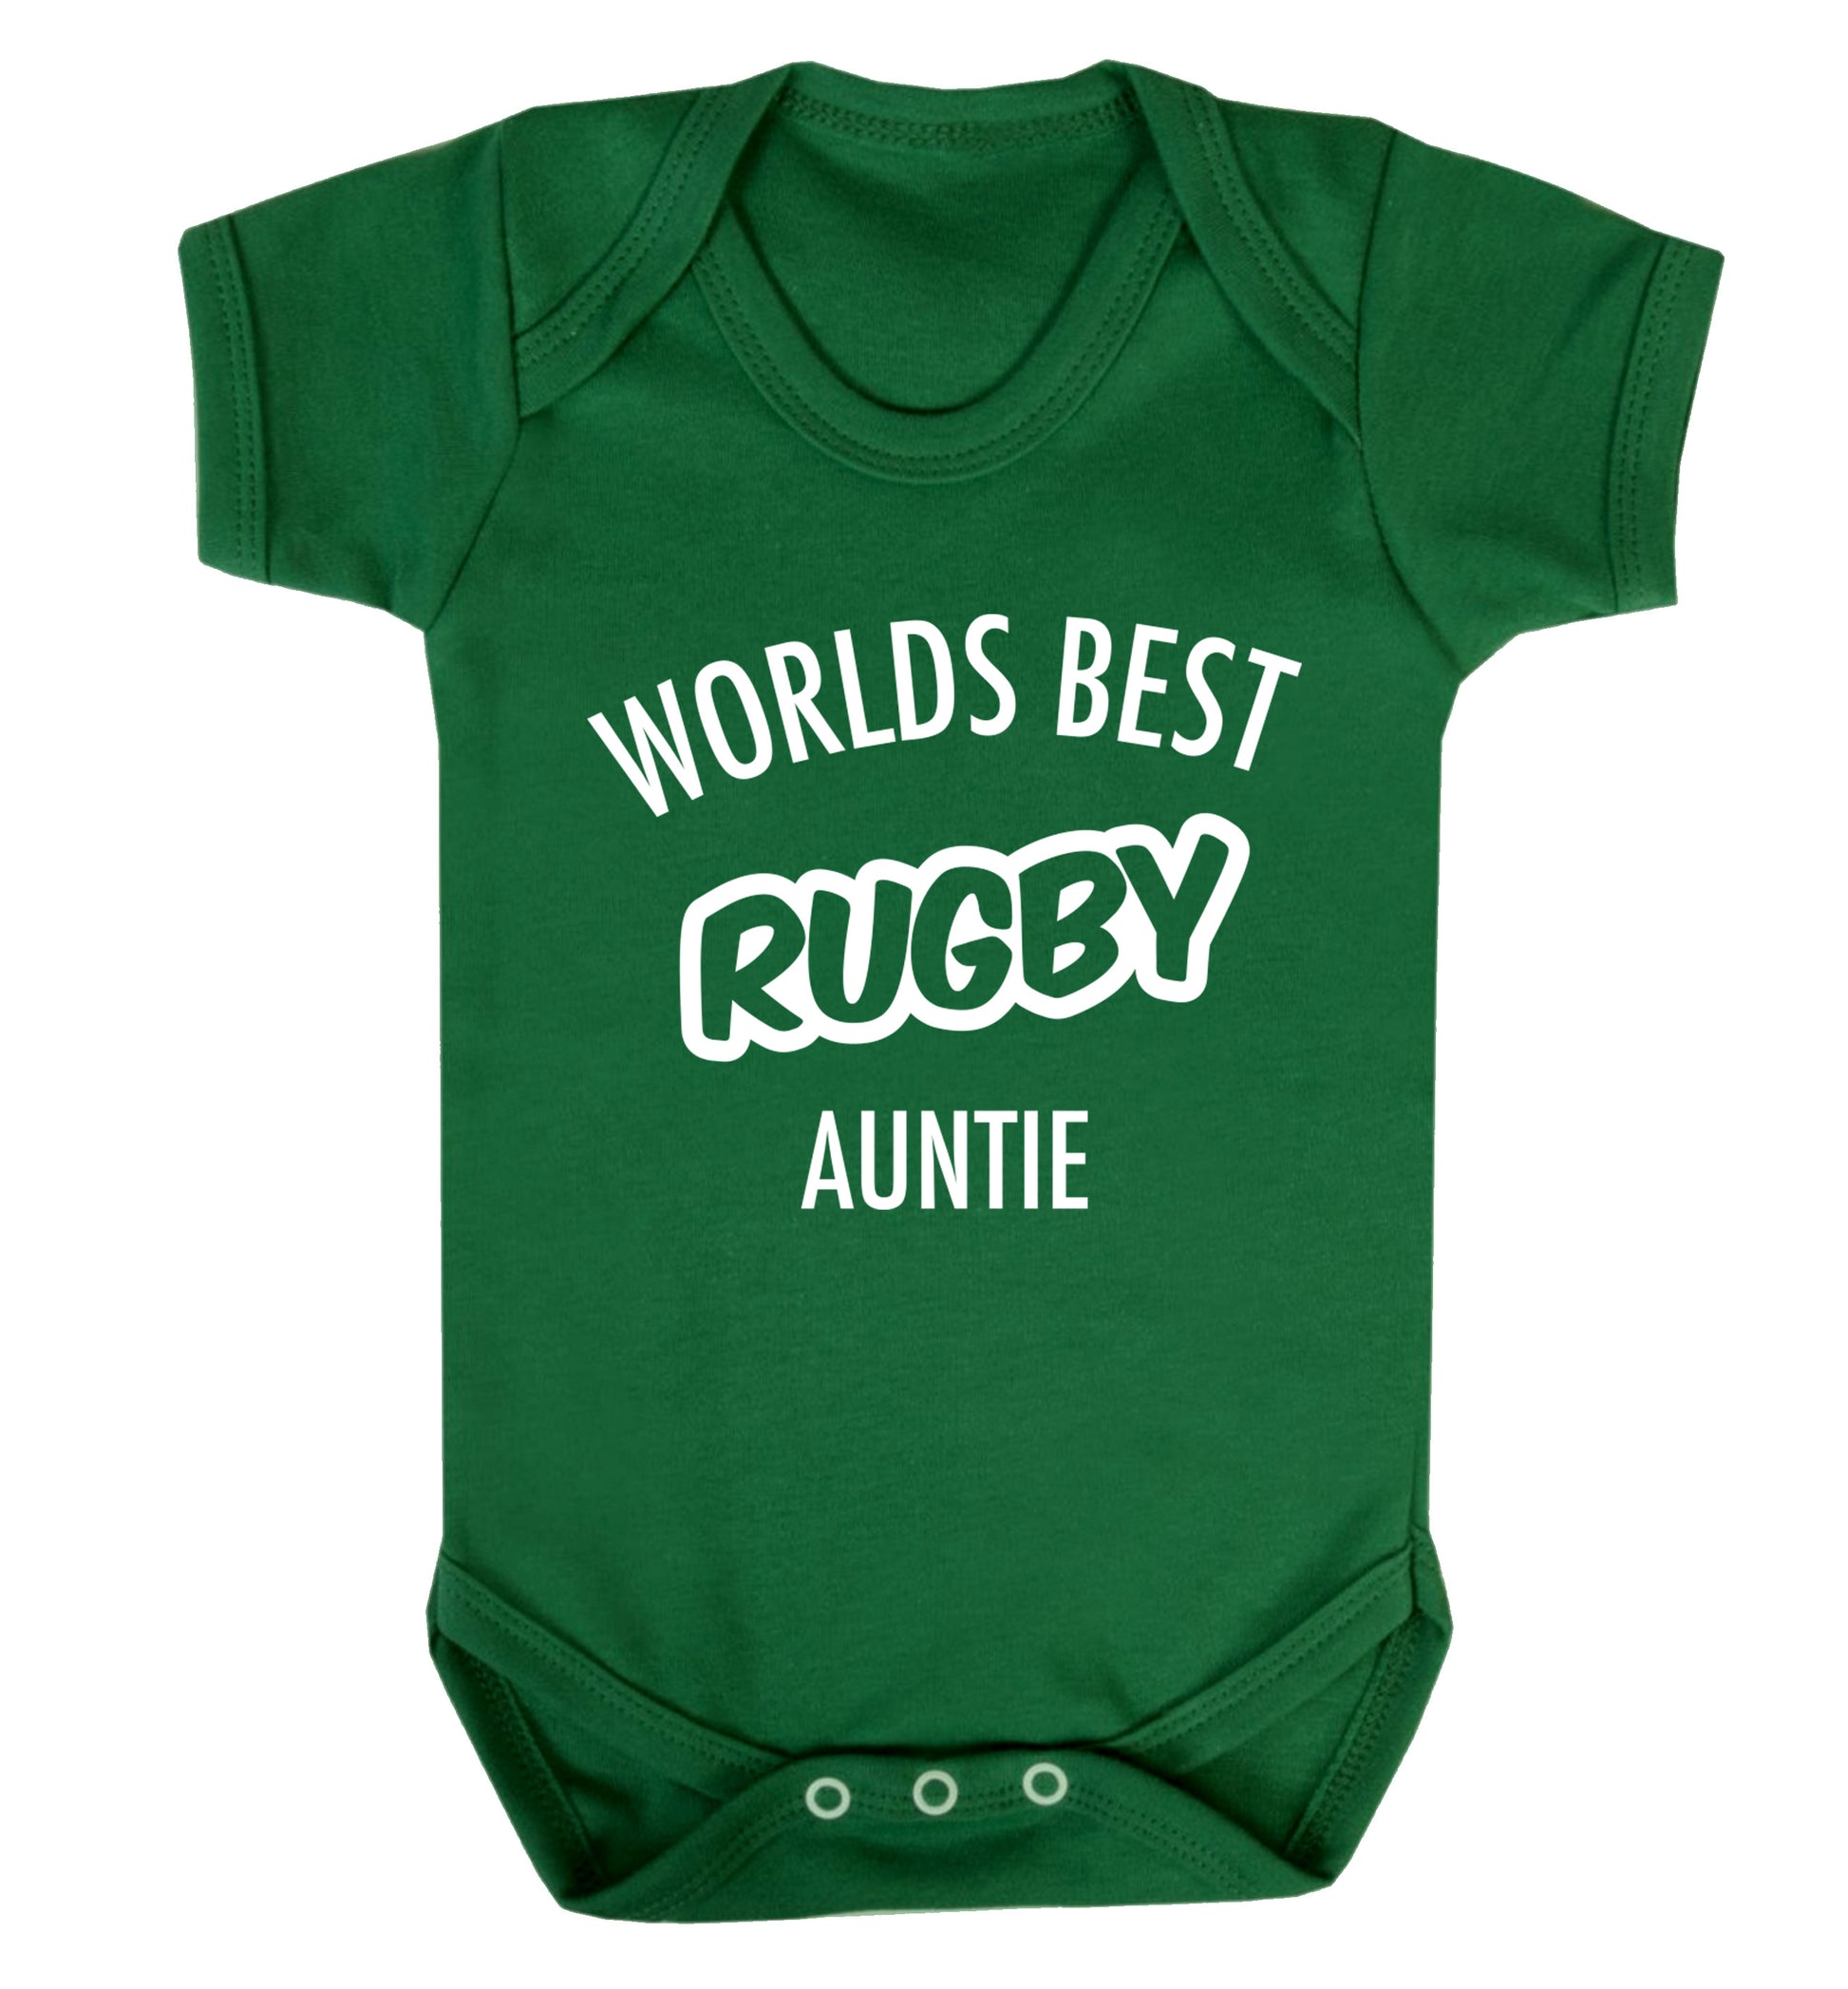 Worlds best rugby auntie Baby Vest green 18-24 months